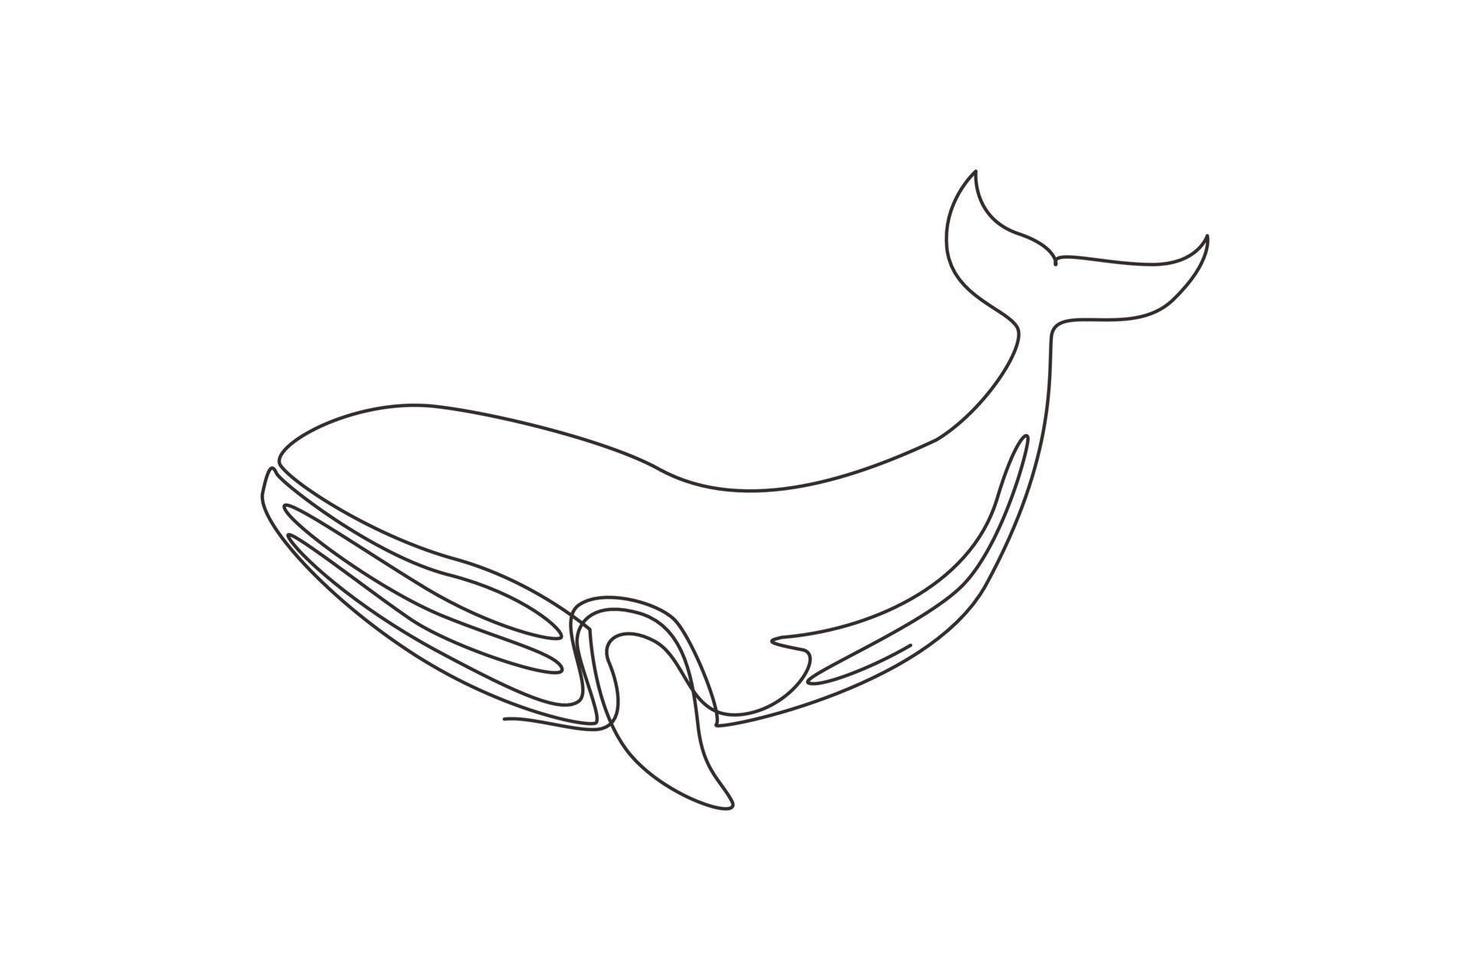 dibujo de una sola línea pez ballena salvaje nadando en la vida marina.  mascota de animales